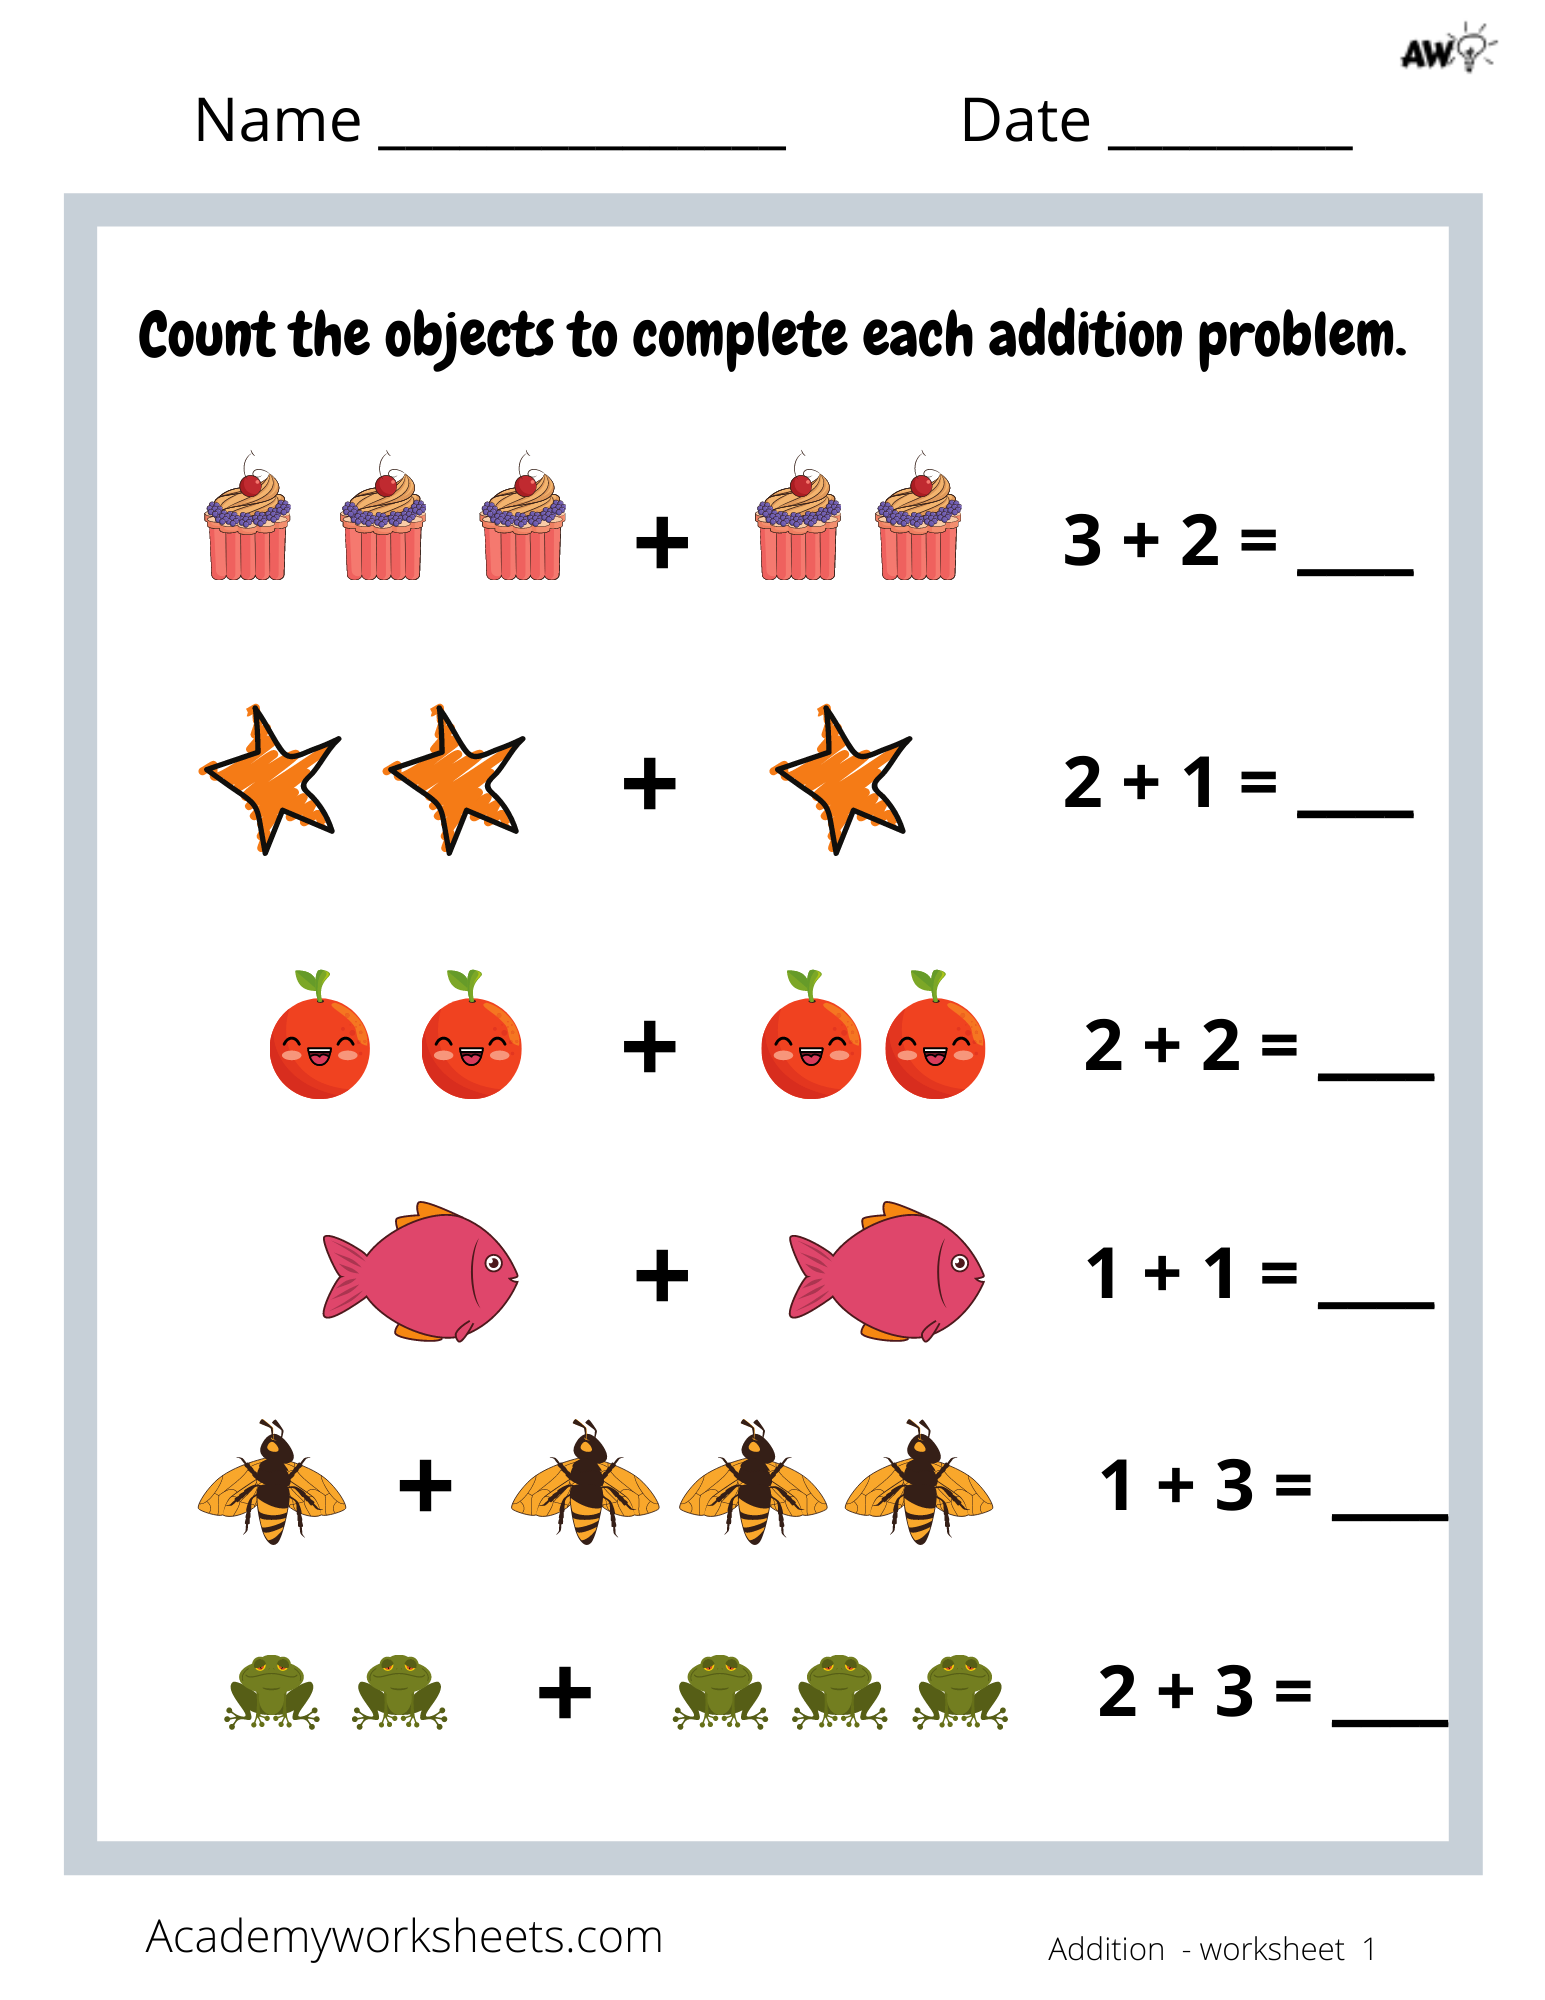 addition-to-5-worksheets-for-kindergarten-printable-kindergarten-worksheets